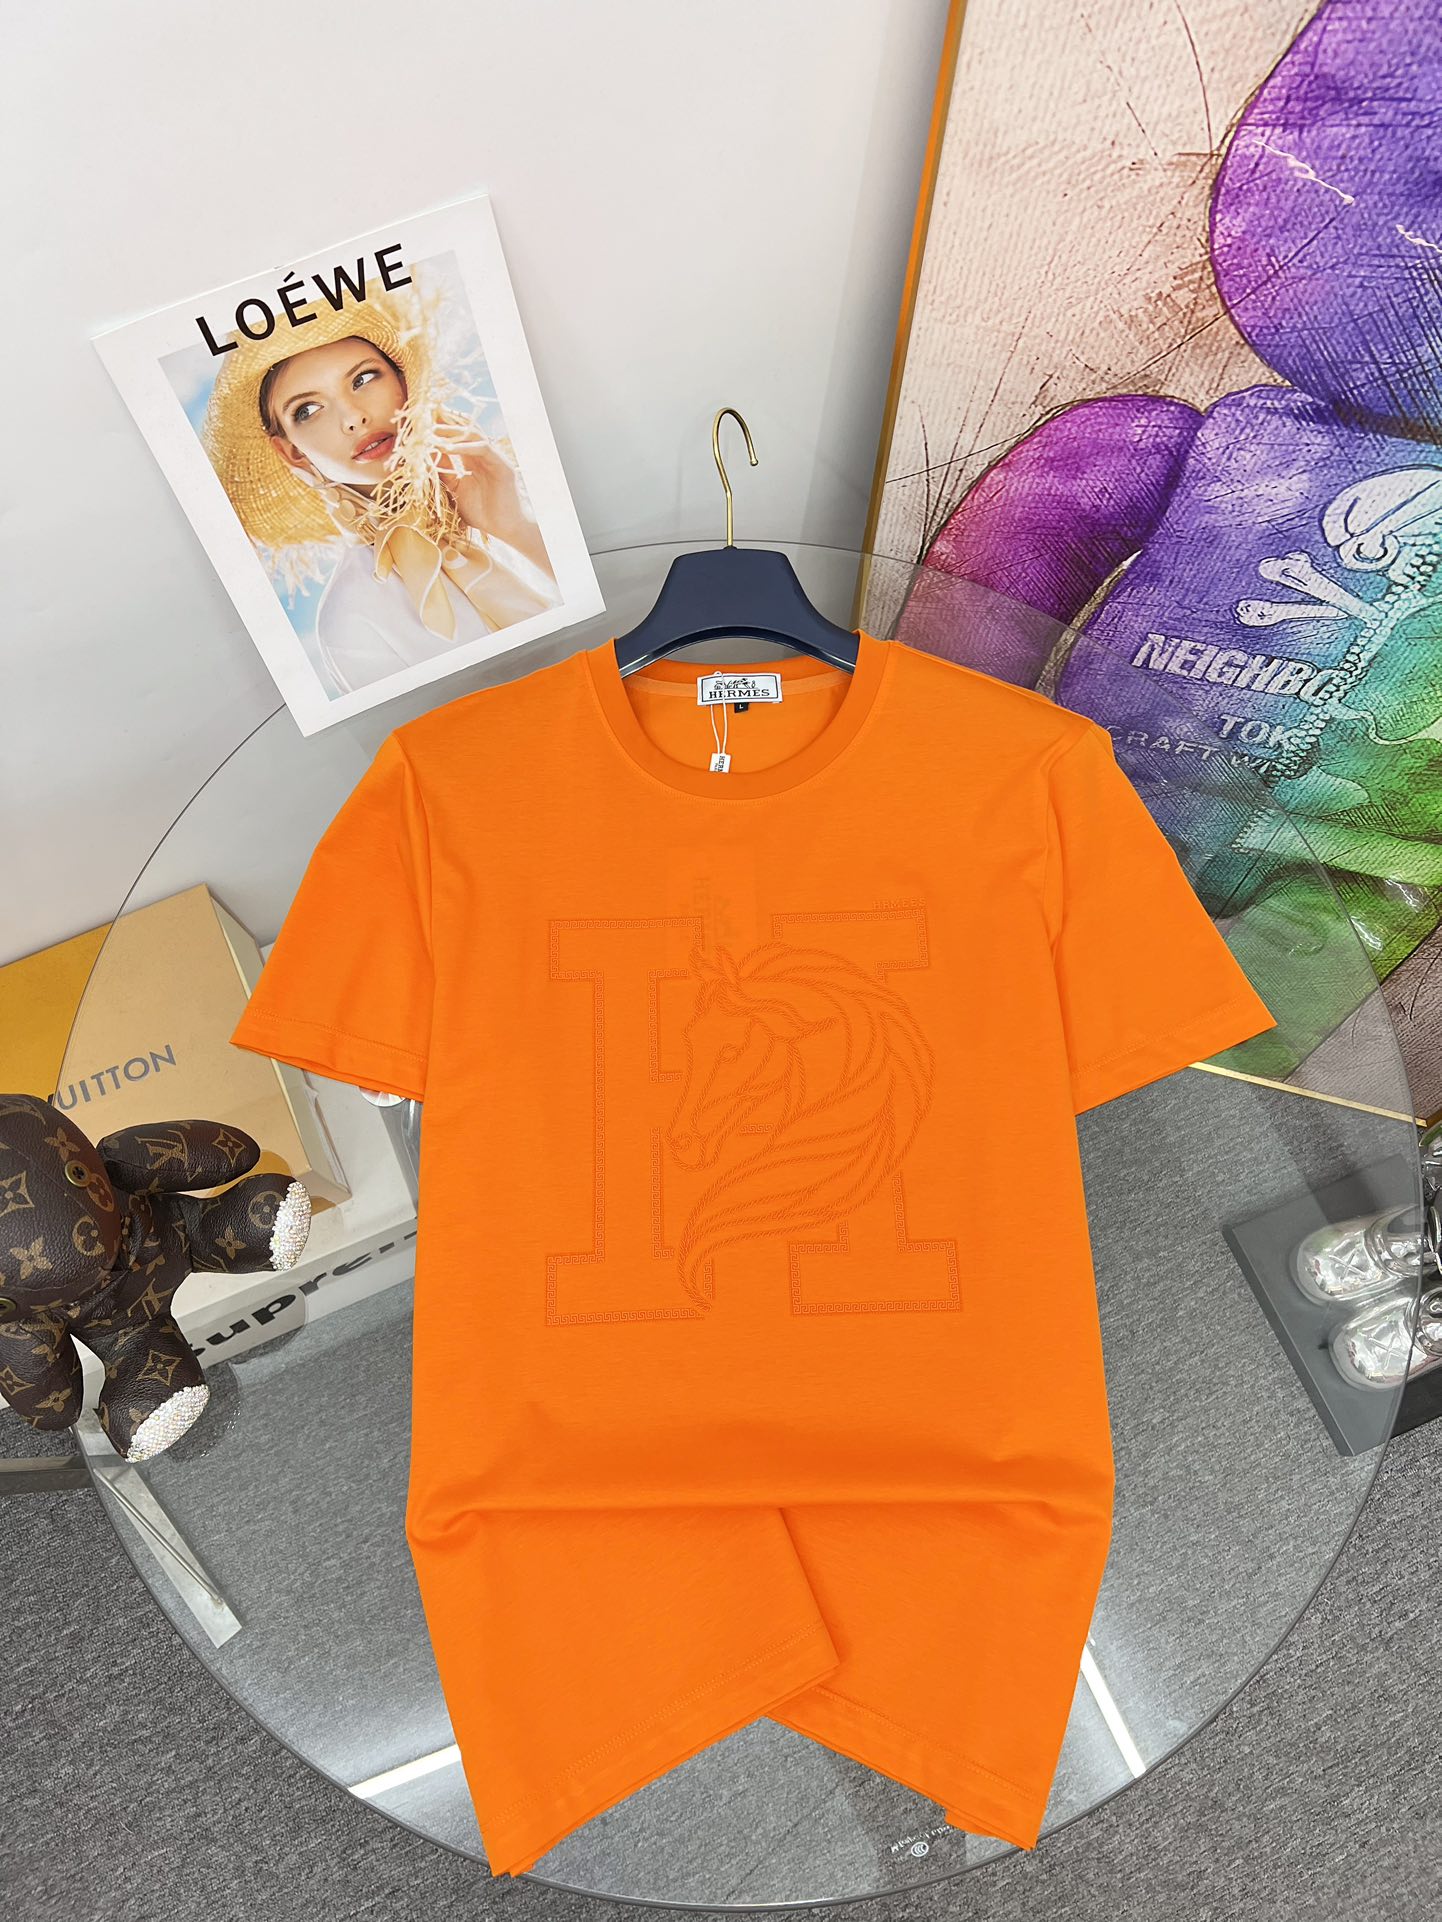 Hermes Vêtements T-Shirt Collection printemps – été Fashion Manches courtes